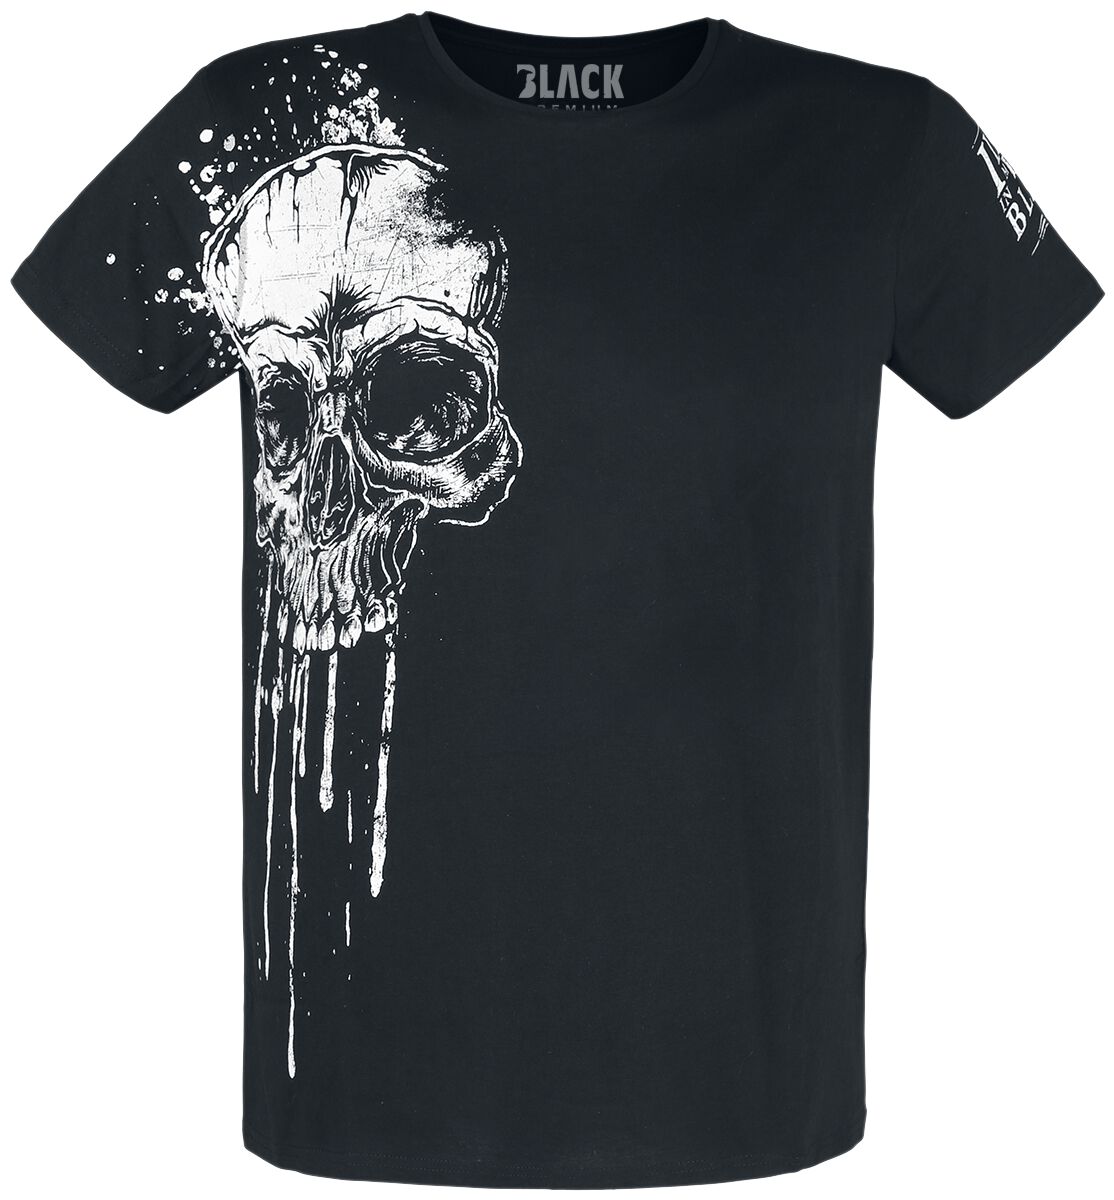 Black Premium by EMP T-Shirt - Rebel Soul - S bis 5XL - für Männer - Größe M - schwarz